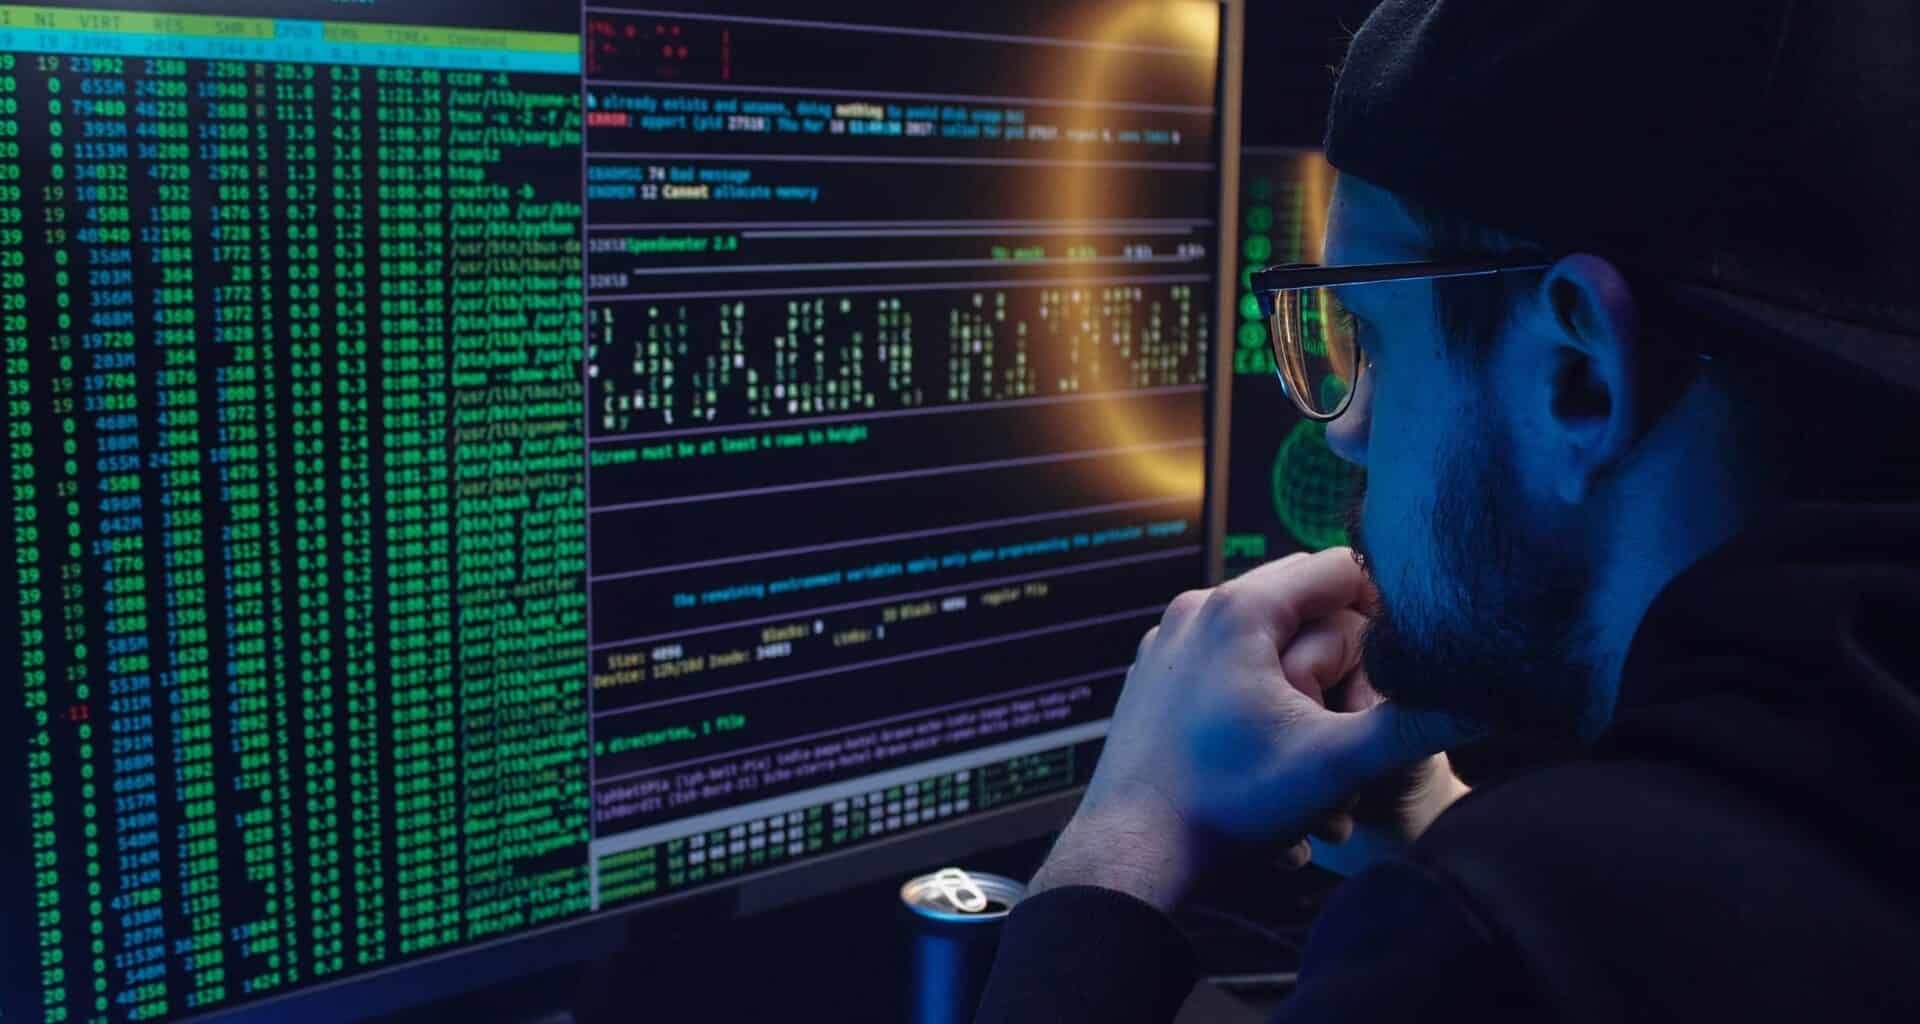 homem olha para tela do computador com códigos hackers